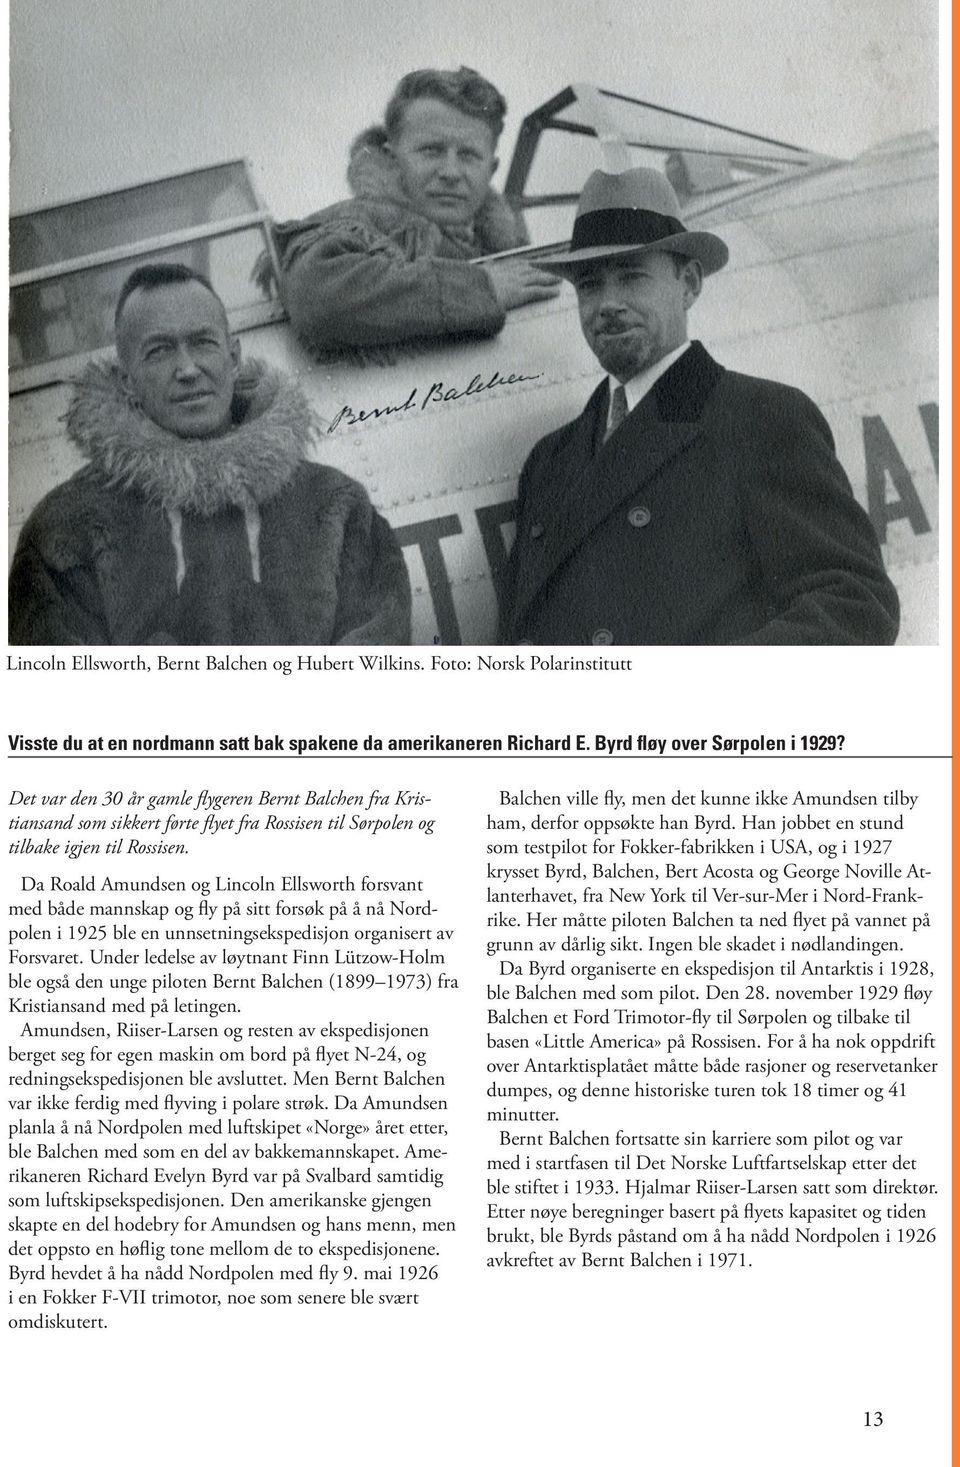 Da Roald Amundsen og Lincoln Ellsworth forsvant med både mannskap og fly på sitt forsøk på å nå Nordpolen i 1925 ble en unnsetningsekspedisjon organisert av Forsvaret.